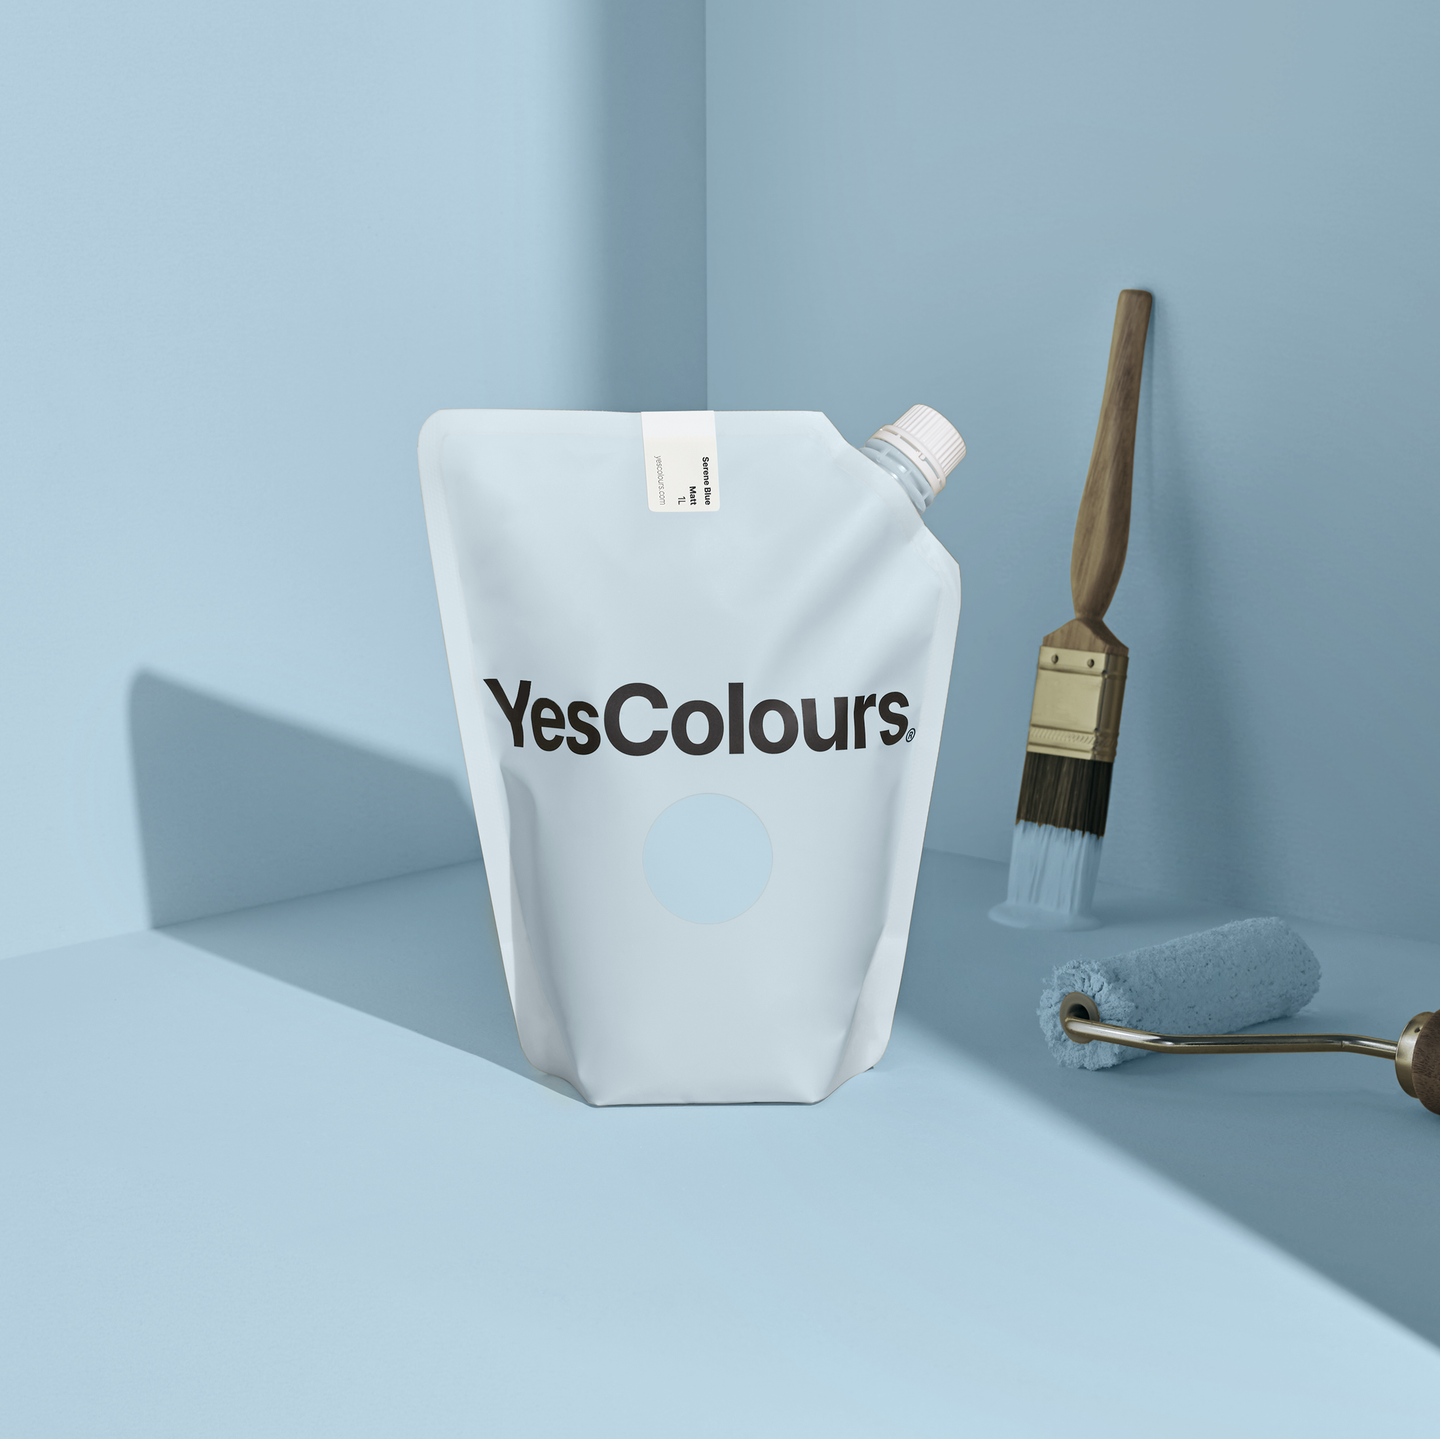 YesColours premium Serene Blue matt emulsion paint Dulux paint, Coat Paint, Lick Paint